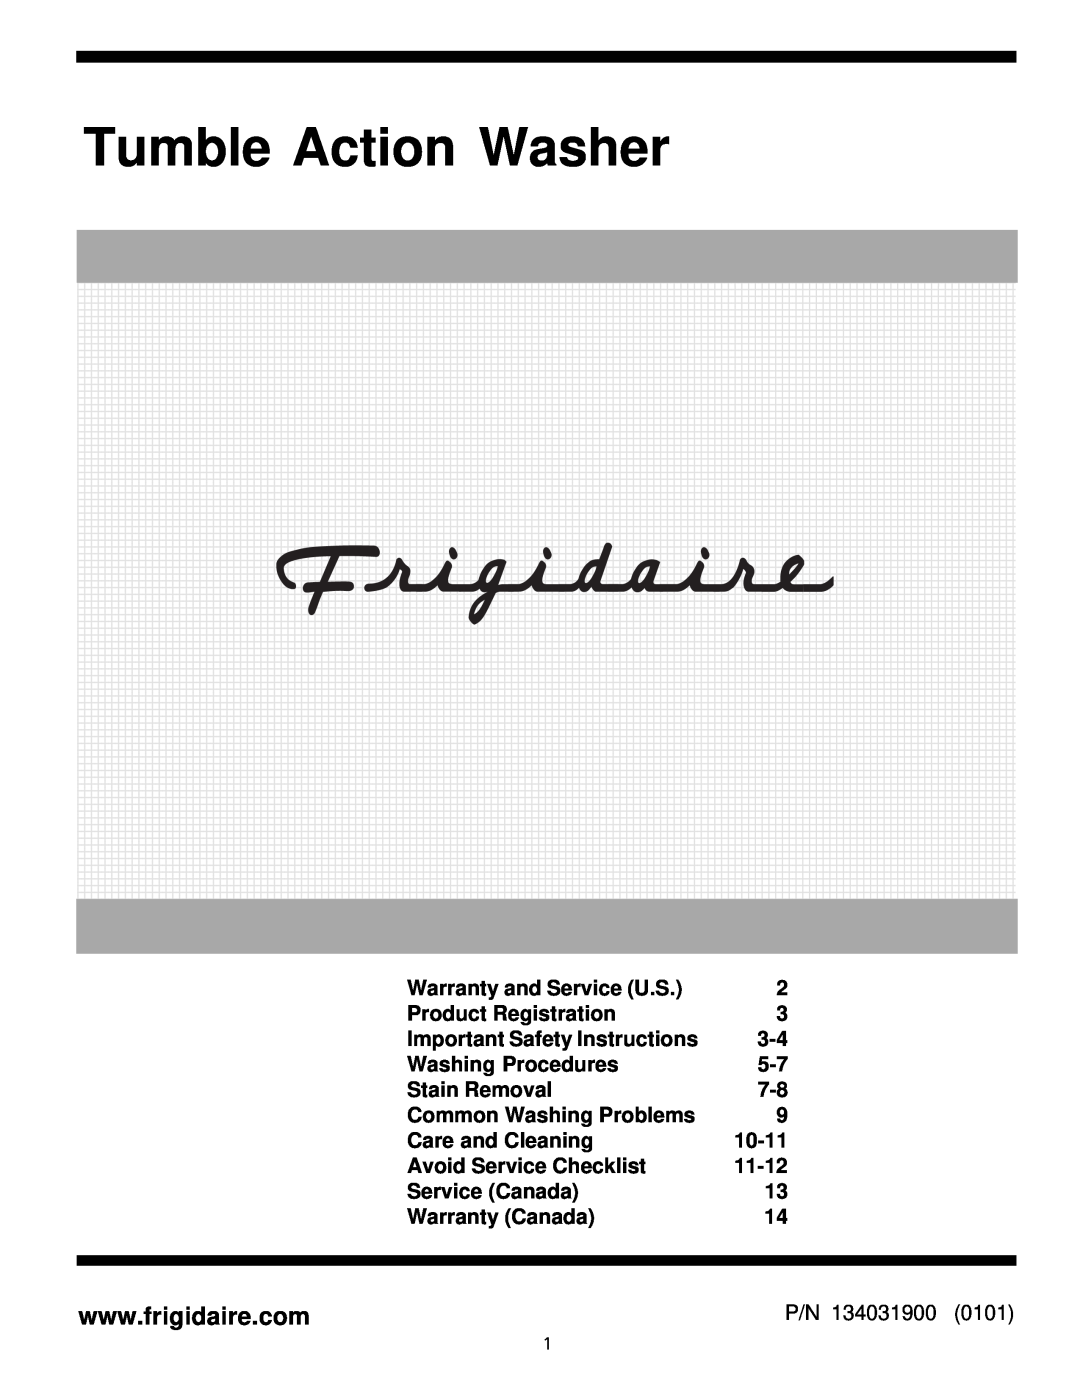 Frigidaire Tumble Action Washers warranty 